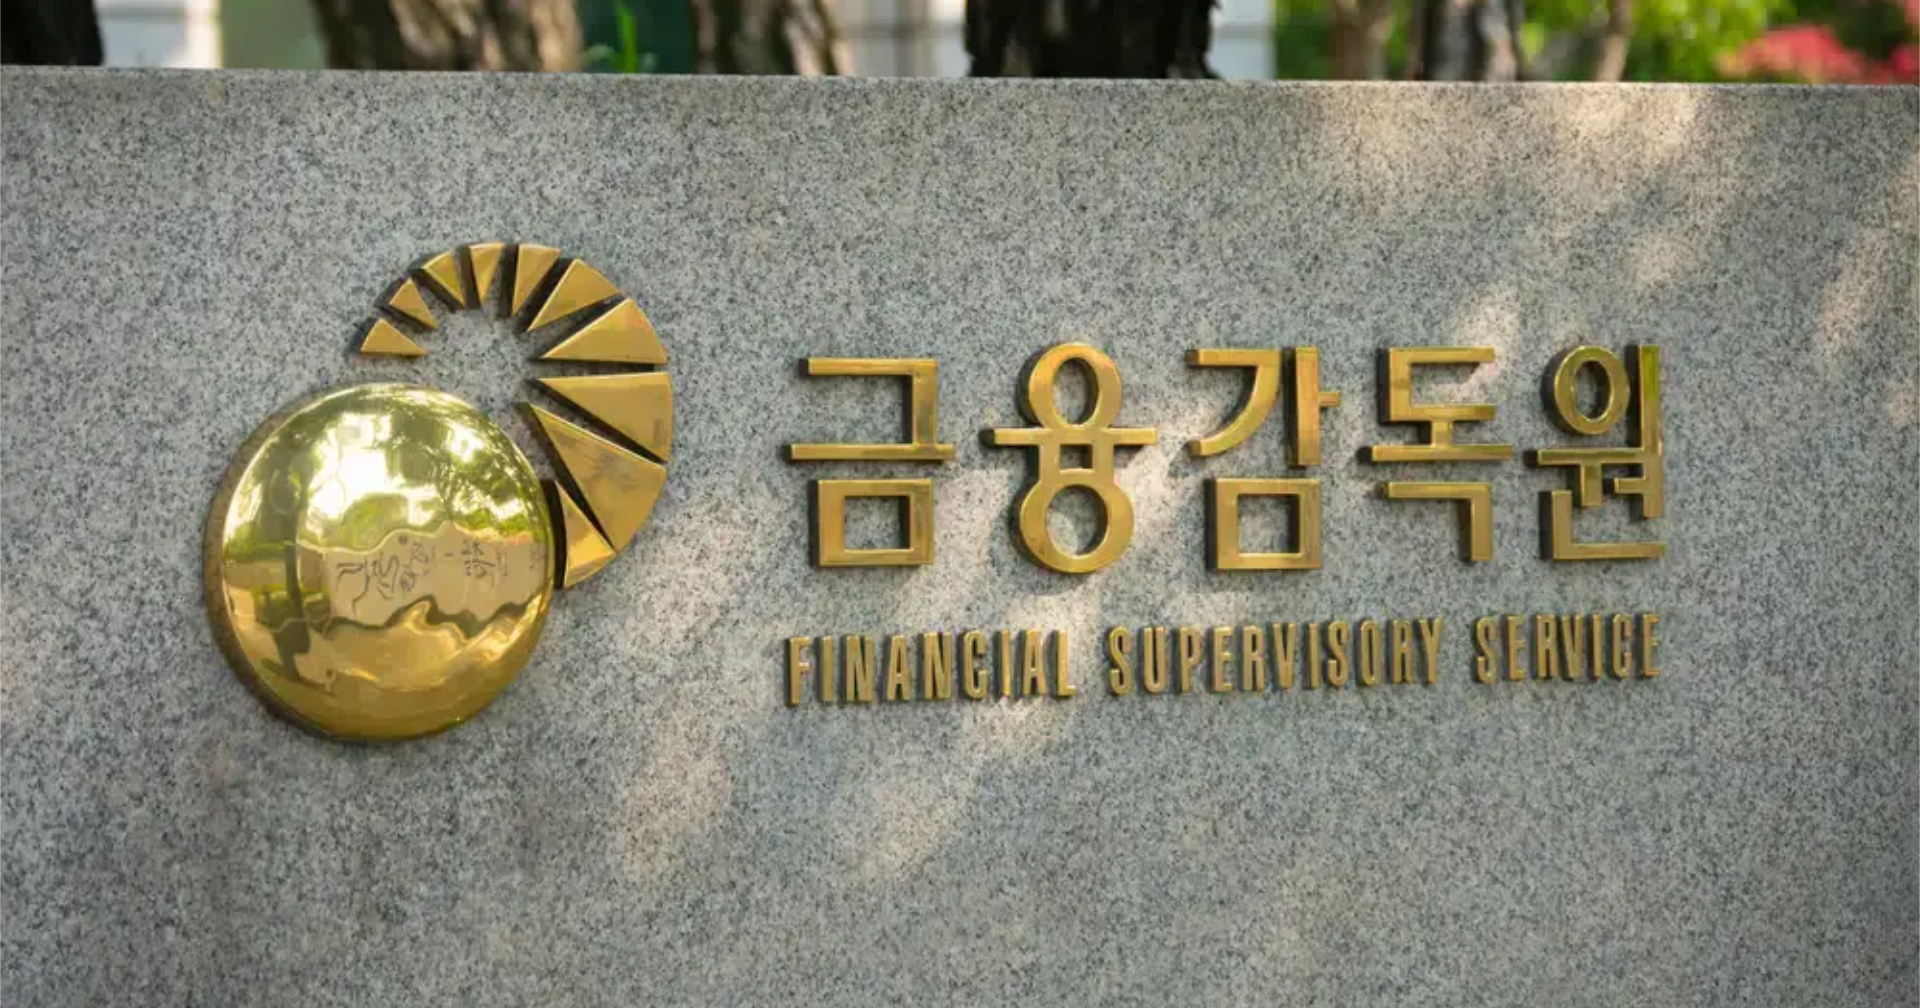 เกาหลีใต้มั่นใจ! ไม่มีสัญญาณการแห่ถอนเงิน หลังธนาคารตะวันตกเกิดวิกฤติ